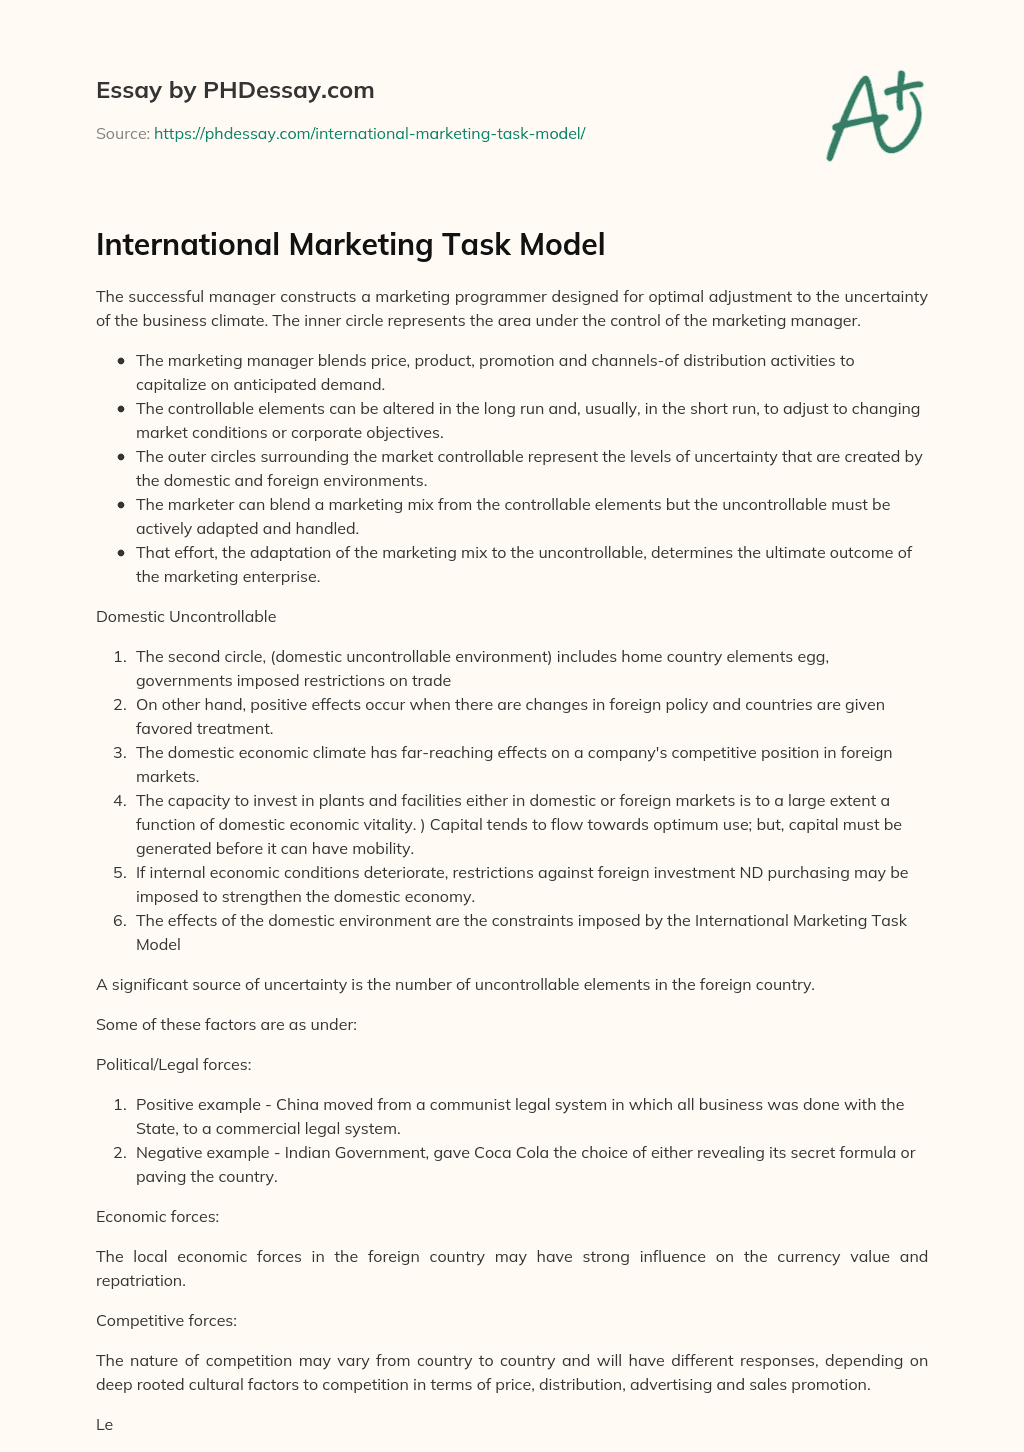 International Marketing Task Model essay